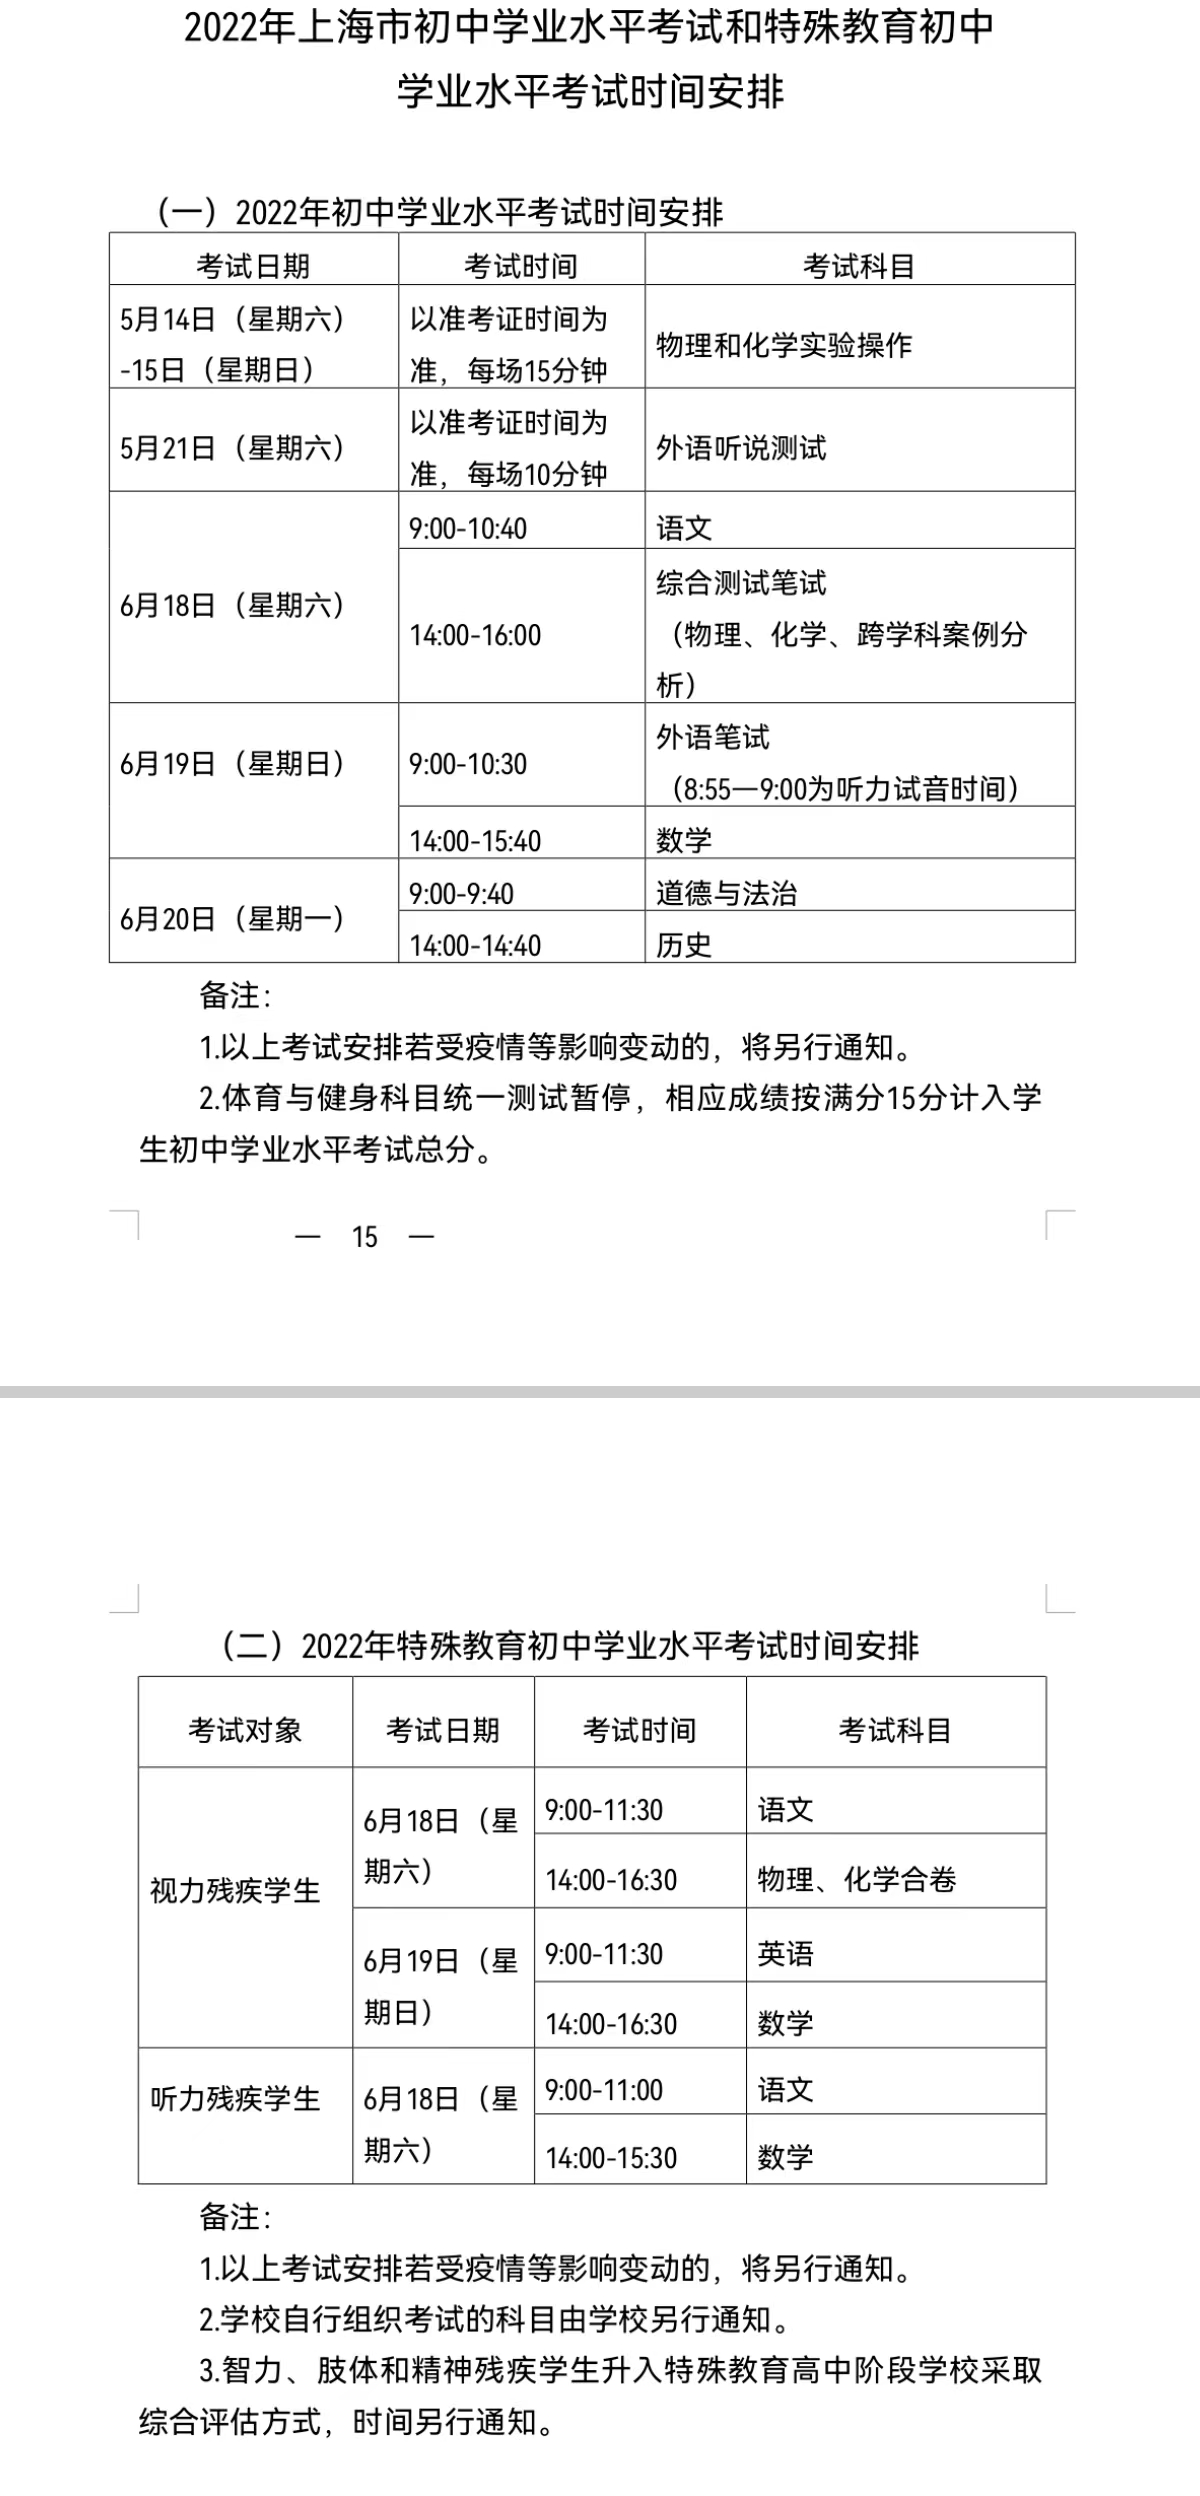 今年上海中考延期且由3天缩短为2天，将优化原有考试安排